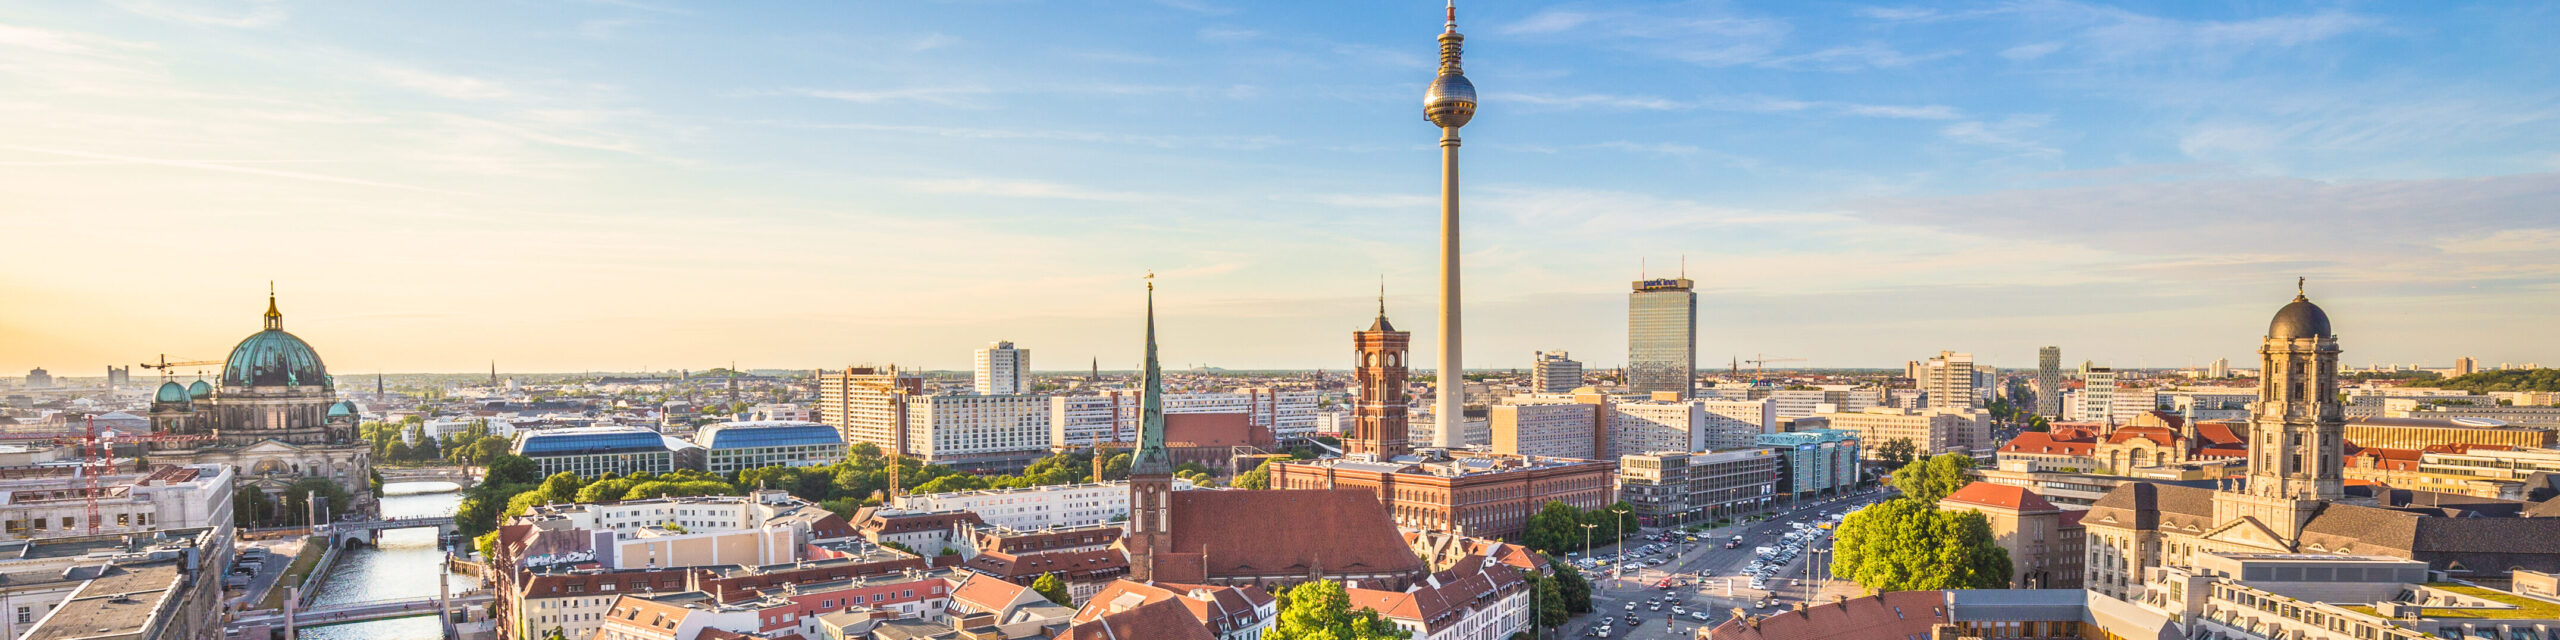 Luftbildaufnahme von Berlin